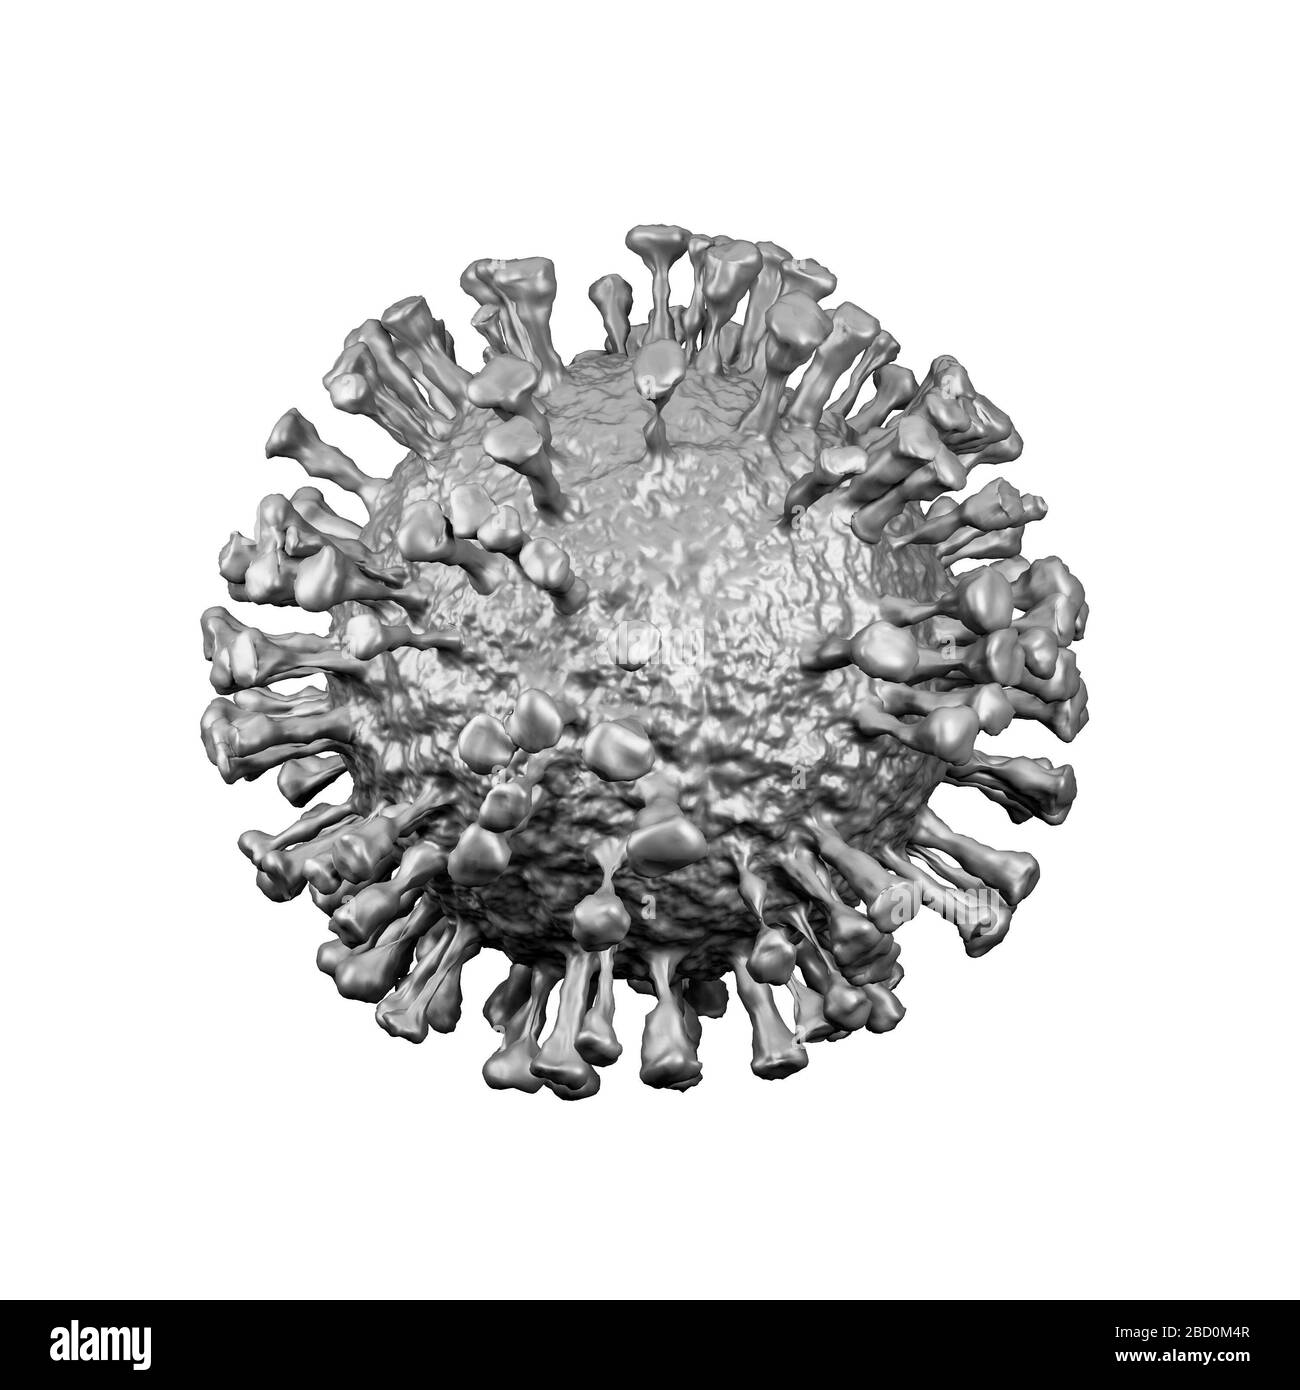 Illustration du modèle cellulaire du coronavirus, pandémie de coronavirus Covid-19, rendu tridimensionnel, conceptuel, gros plan, fond blanc Banque D'Images